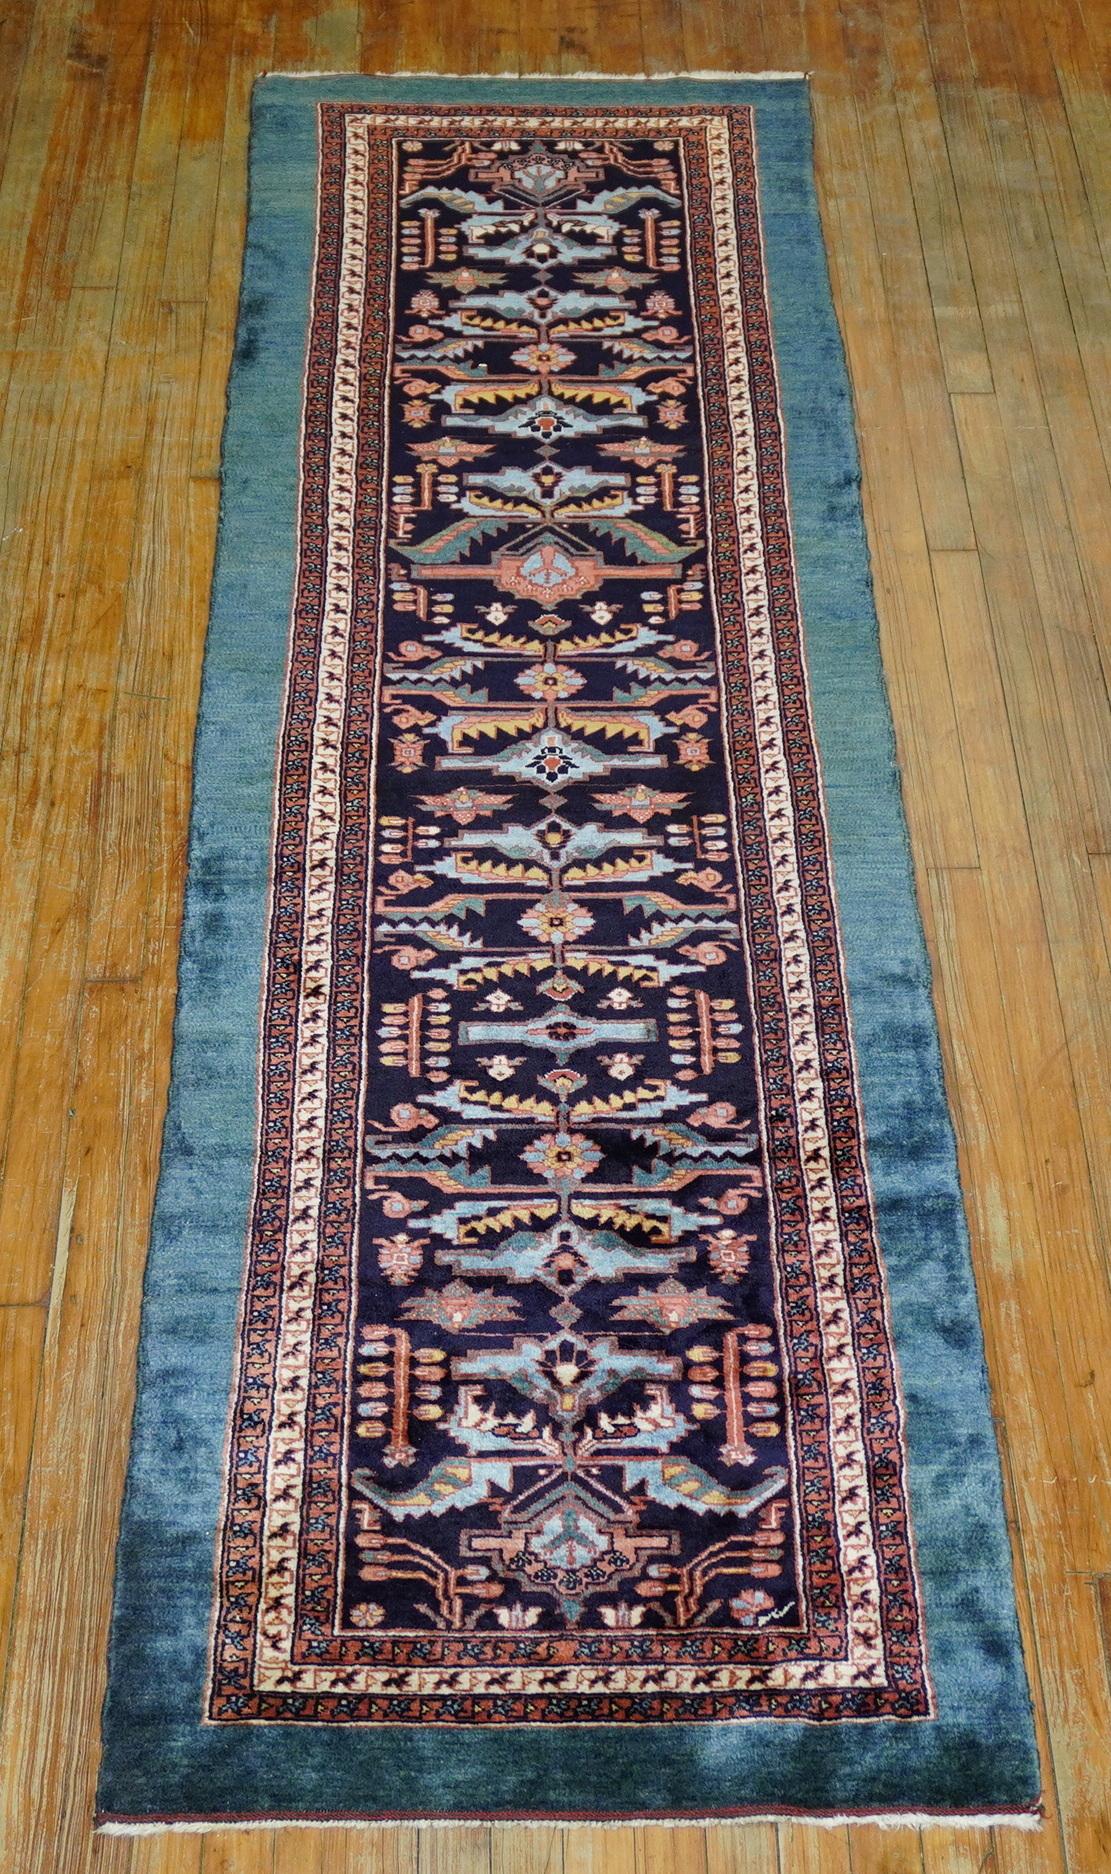 Tapis persan Kashkuli de la fin du 20e siècle, 100% végétal, avec une étrange bordure sarcelle ressemblant aux tapis tribaux persans serab et bakshaish

Mesures : 2'6'' x 8'11''.